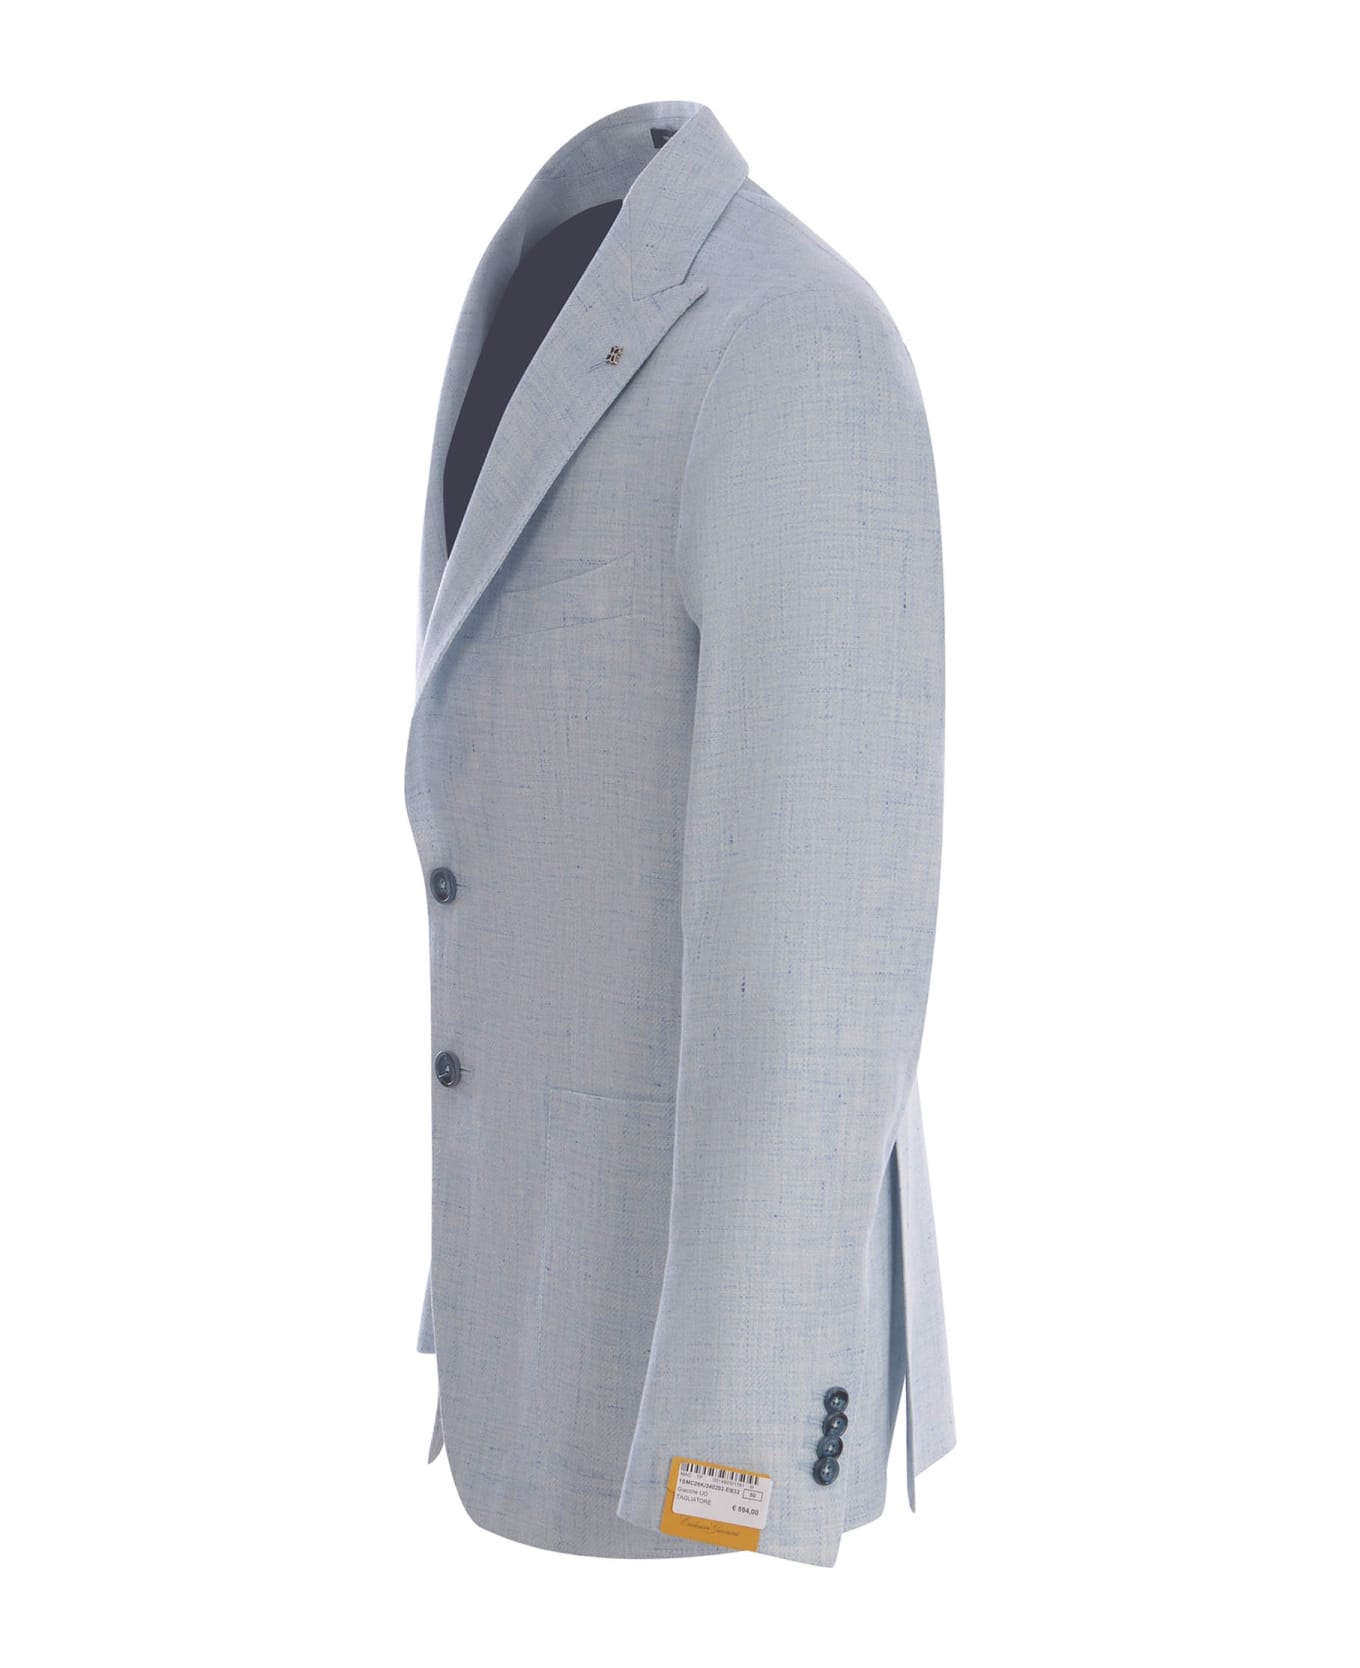 Tagliatore Single-breasted Jacket Tagliatore In Linen And Cotton - Celeste chiaro